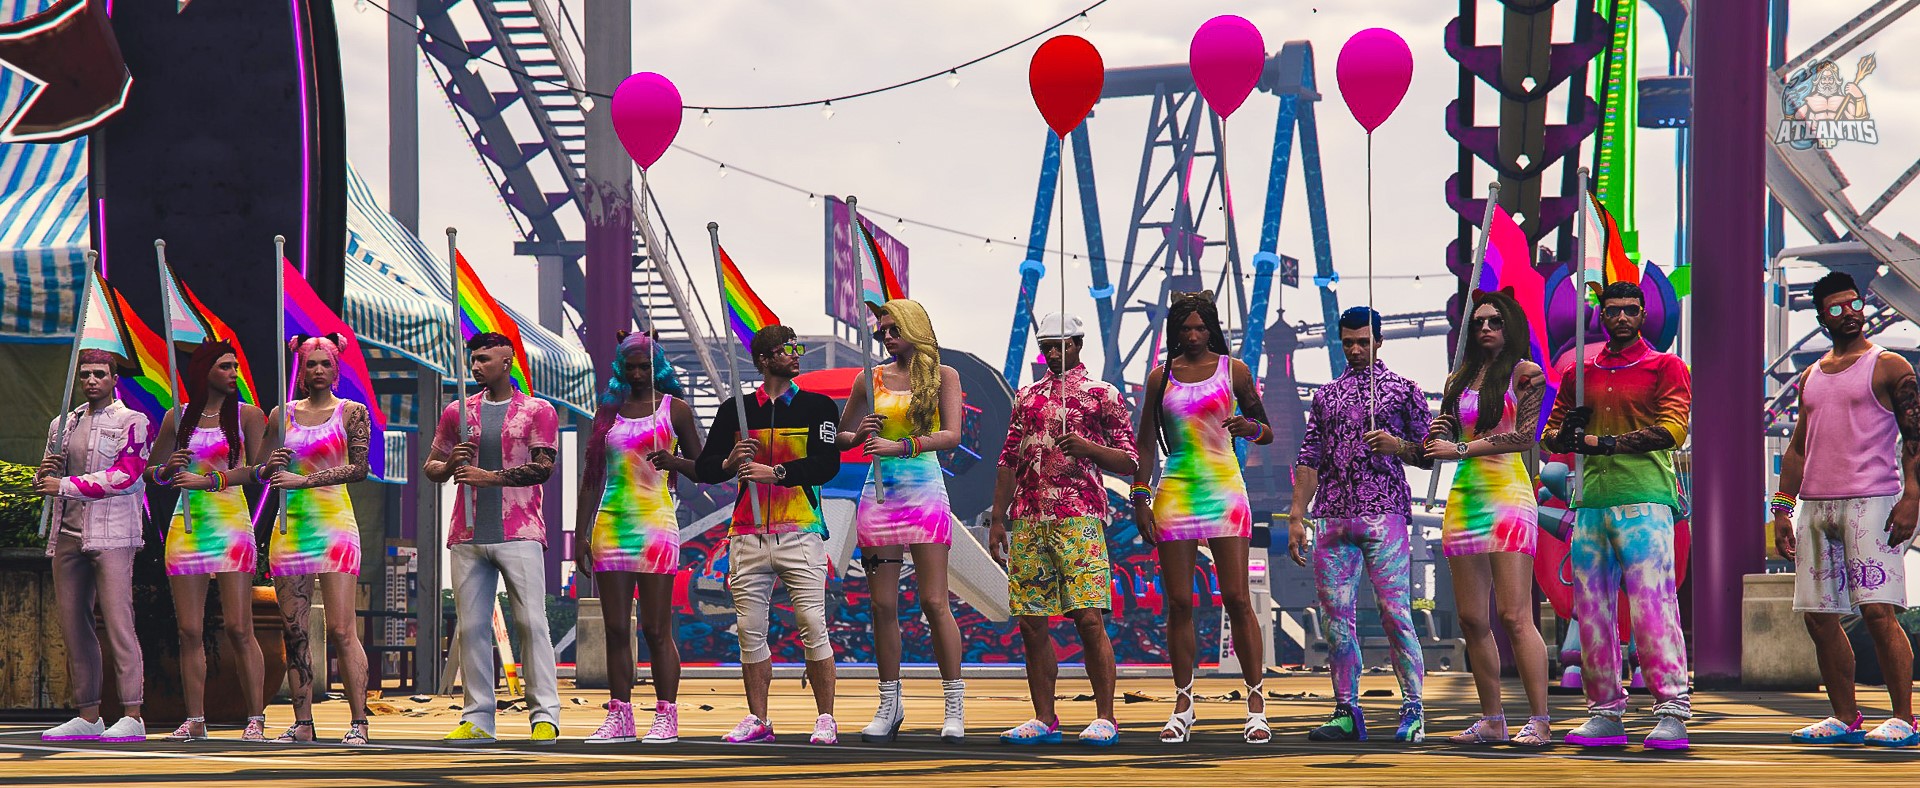 Jugadores con sus personajes vestidos con colores del arcoíris con globos y banderas representativas del orgullo LGTBIQ+ durante un evento homónimo. 